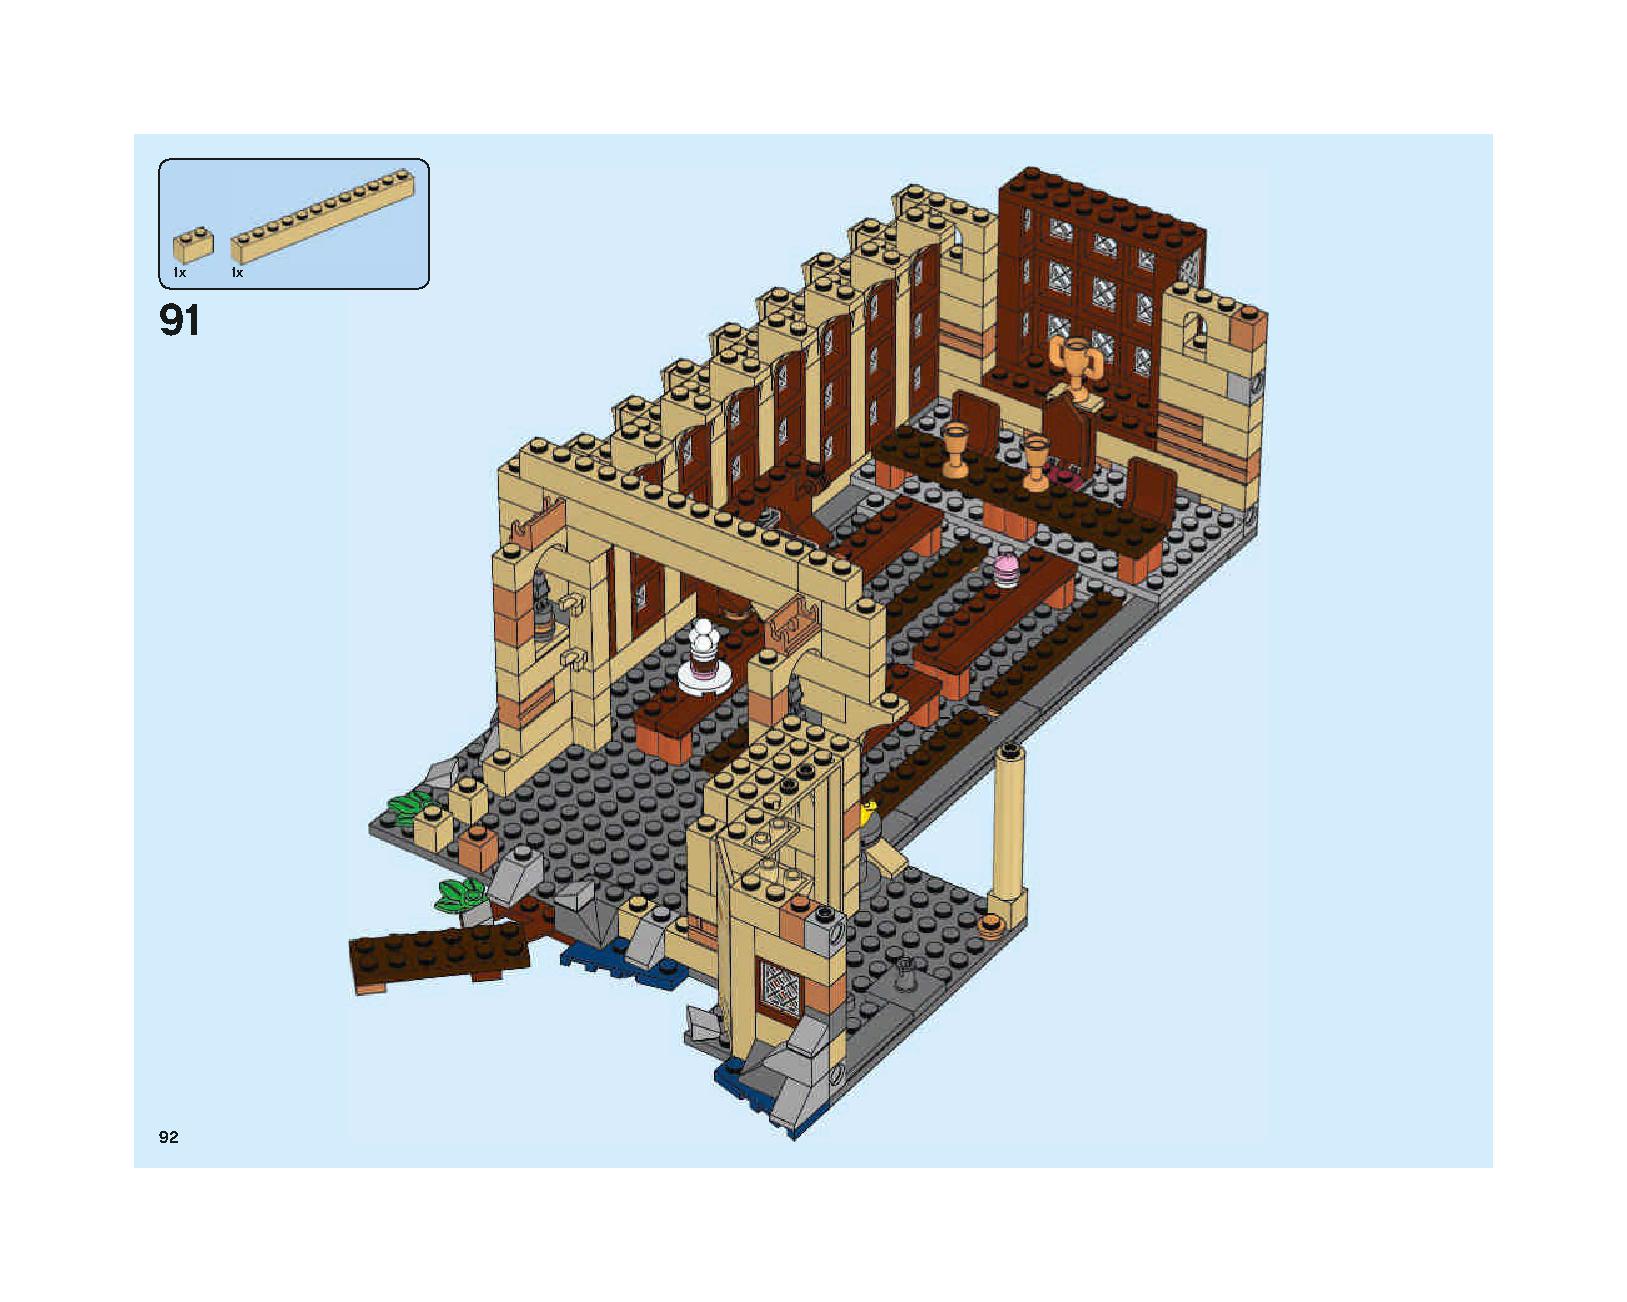 ホグワーツの大広間 75954 レゴの商品情報 レゴの説明書・組立方法 92 page